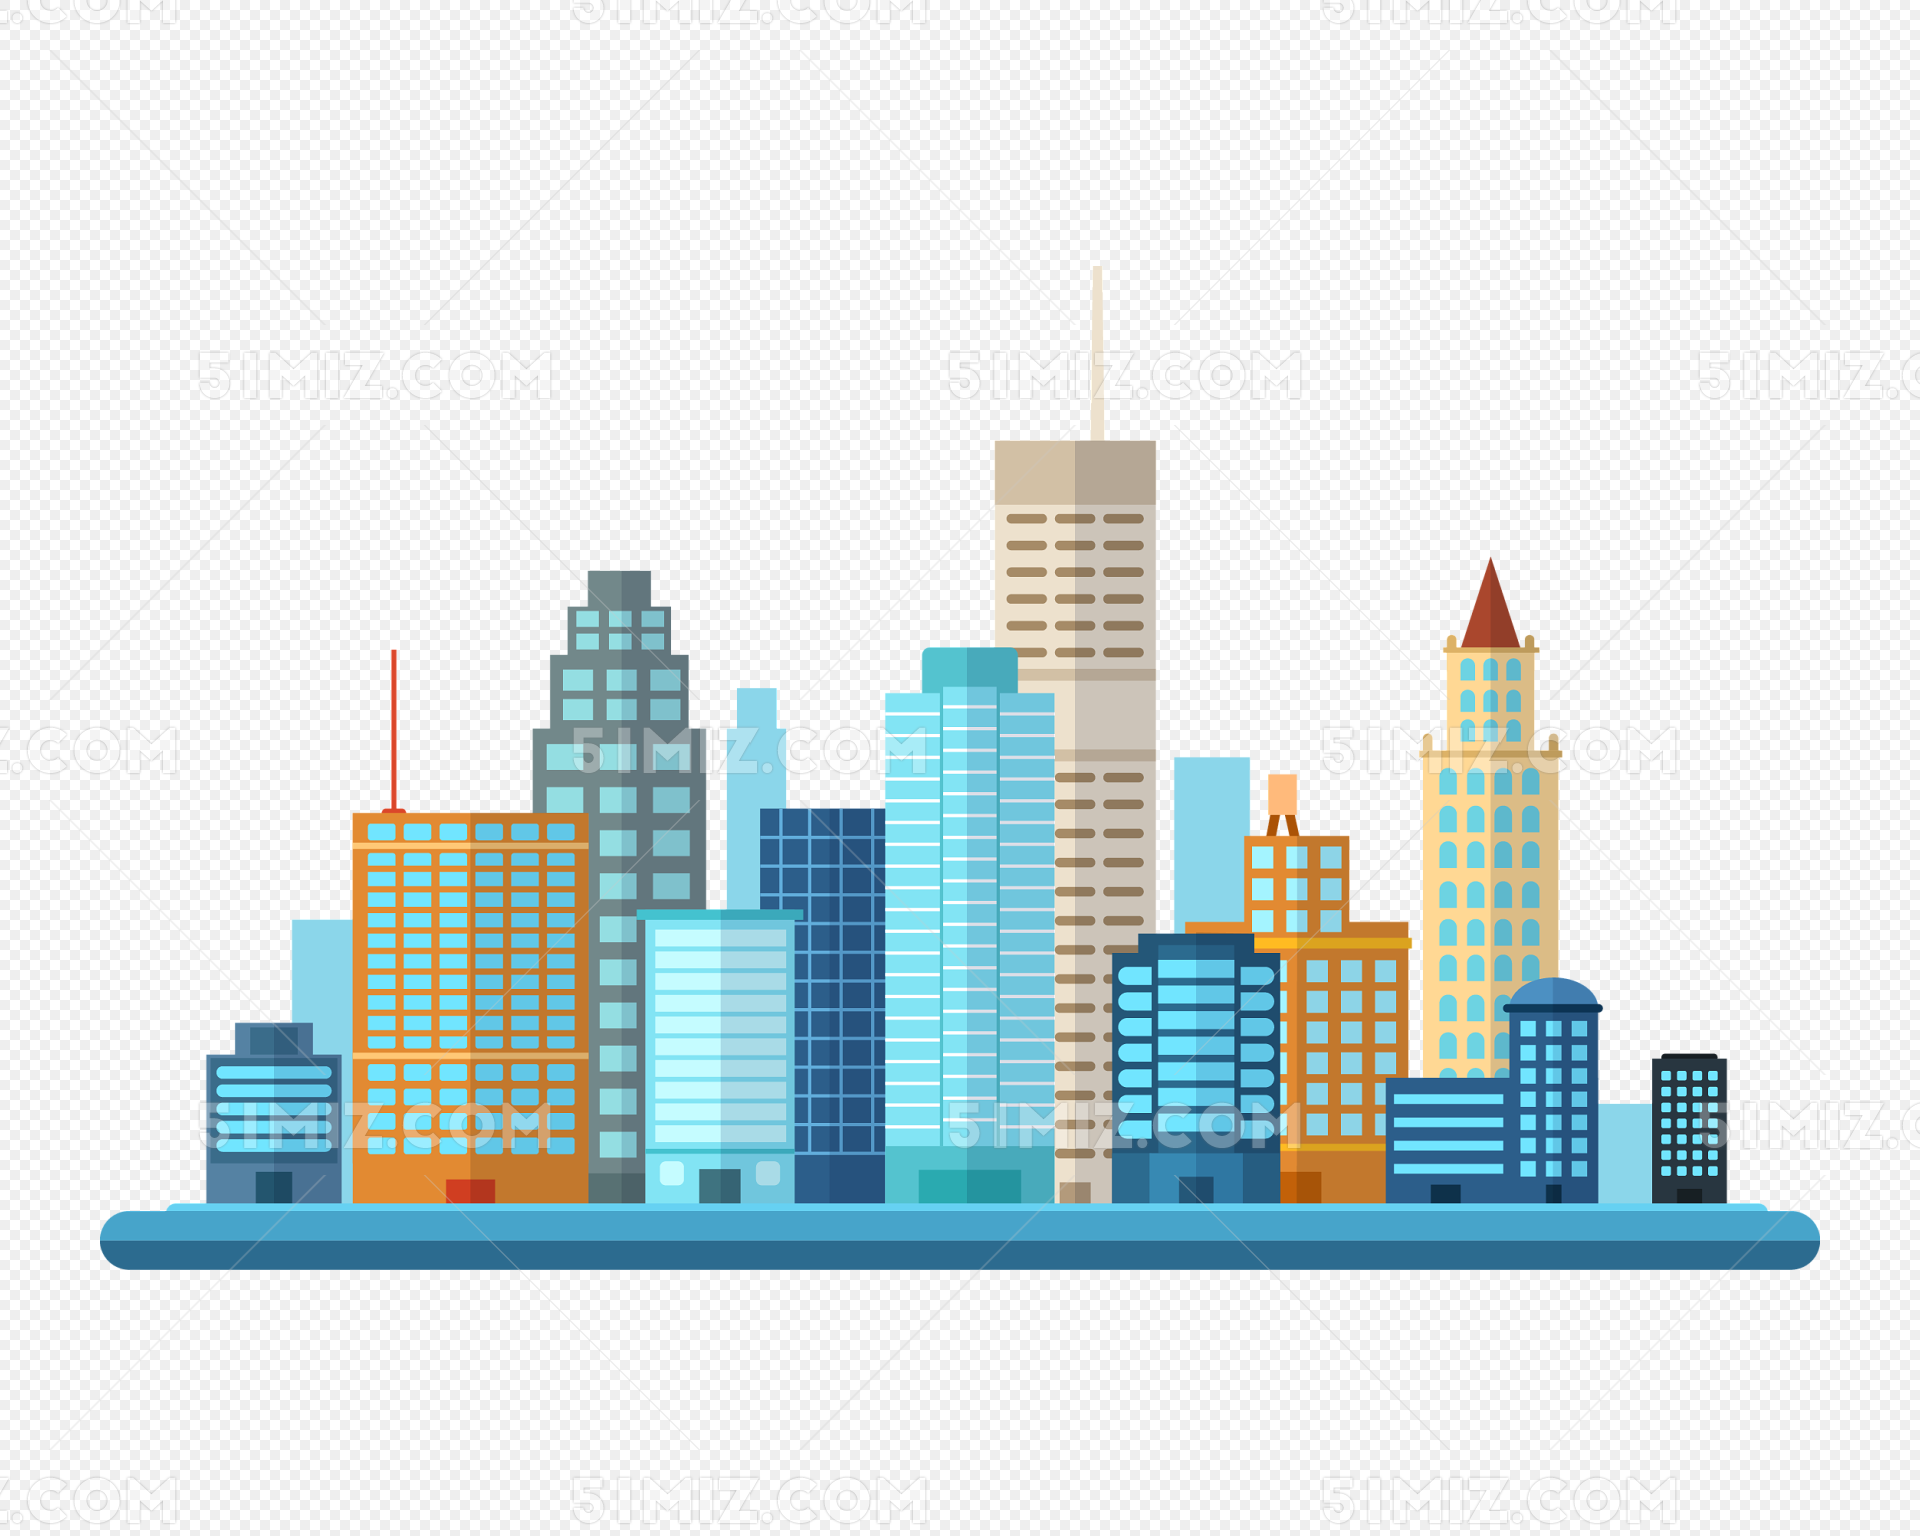 卡通扁平化城市建筑矢量素材免费下载 - 觅知网